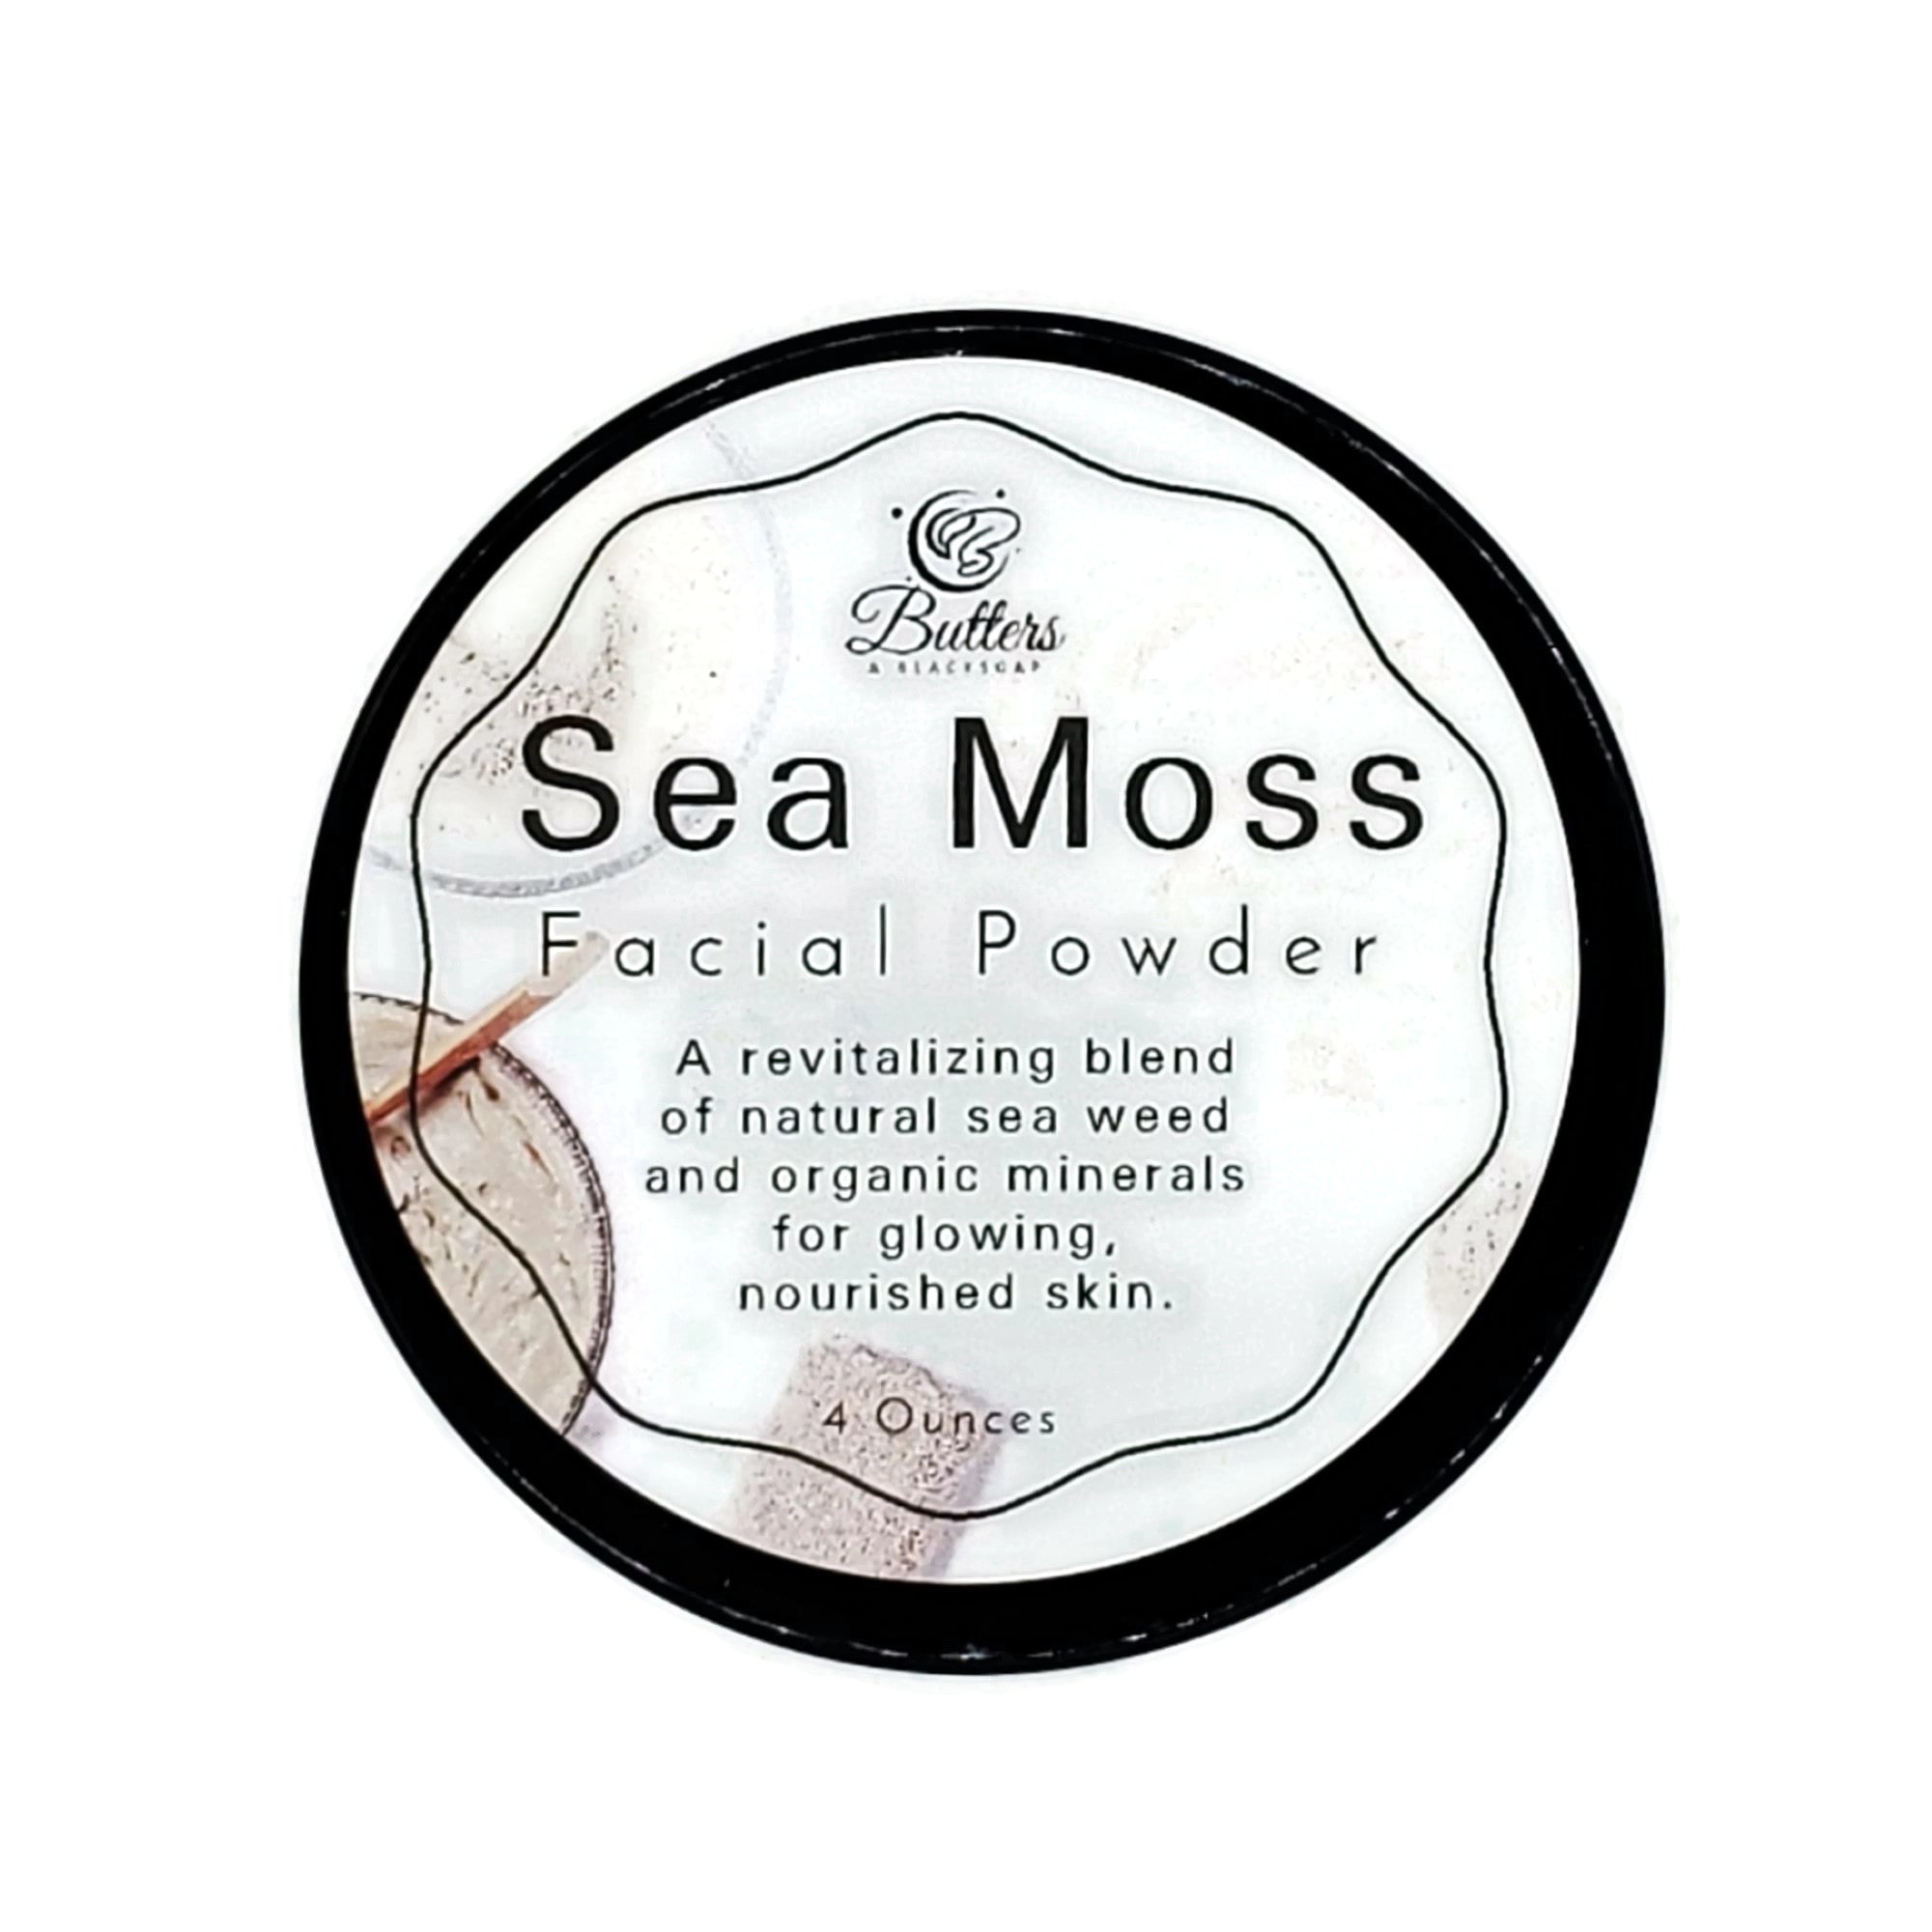 Sea Moss Facial Powder